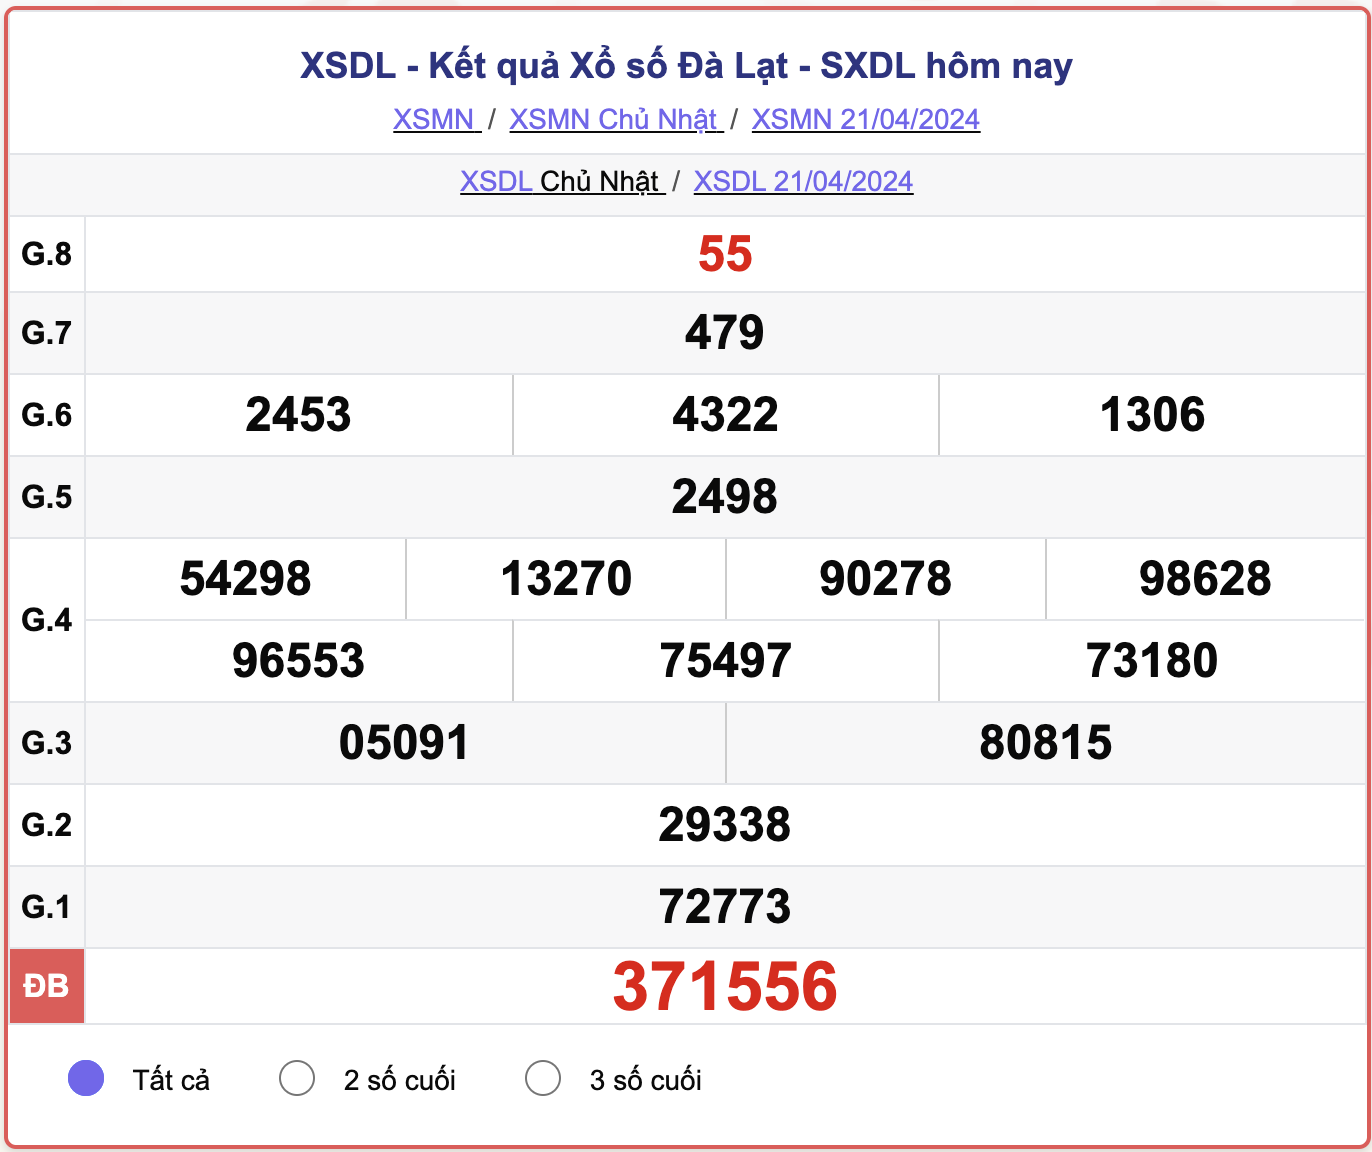 XSDL Chủ nhật, kết quả xổ số Đà Lạt ngày 21/4/2024.